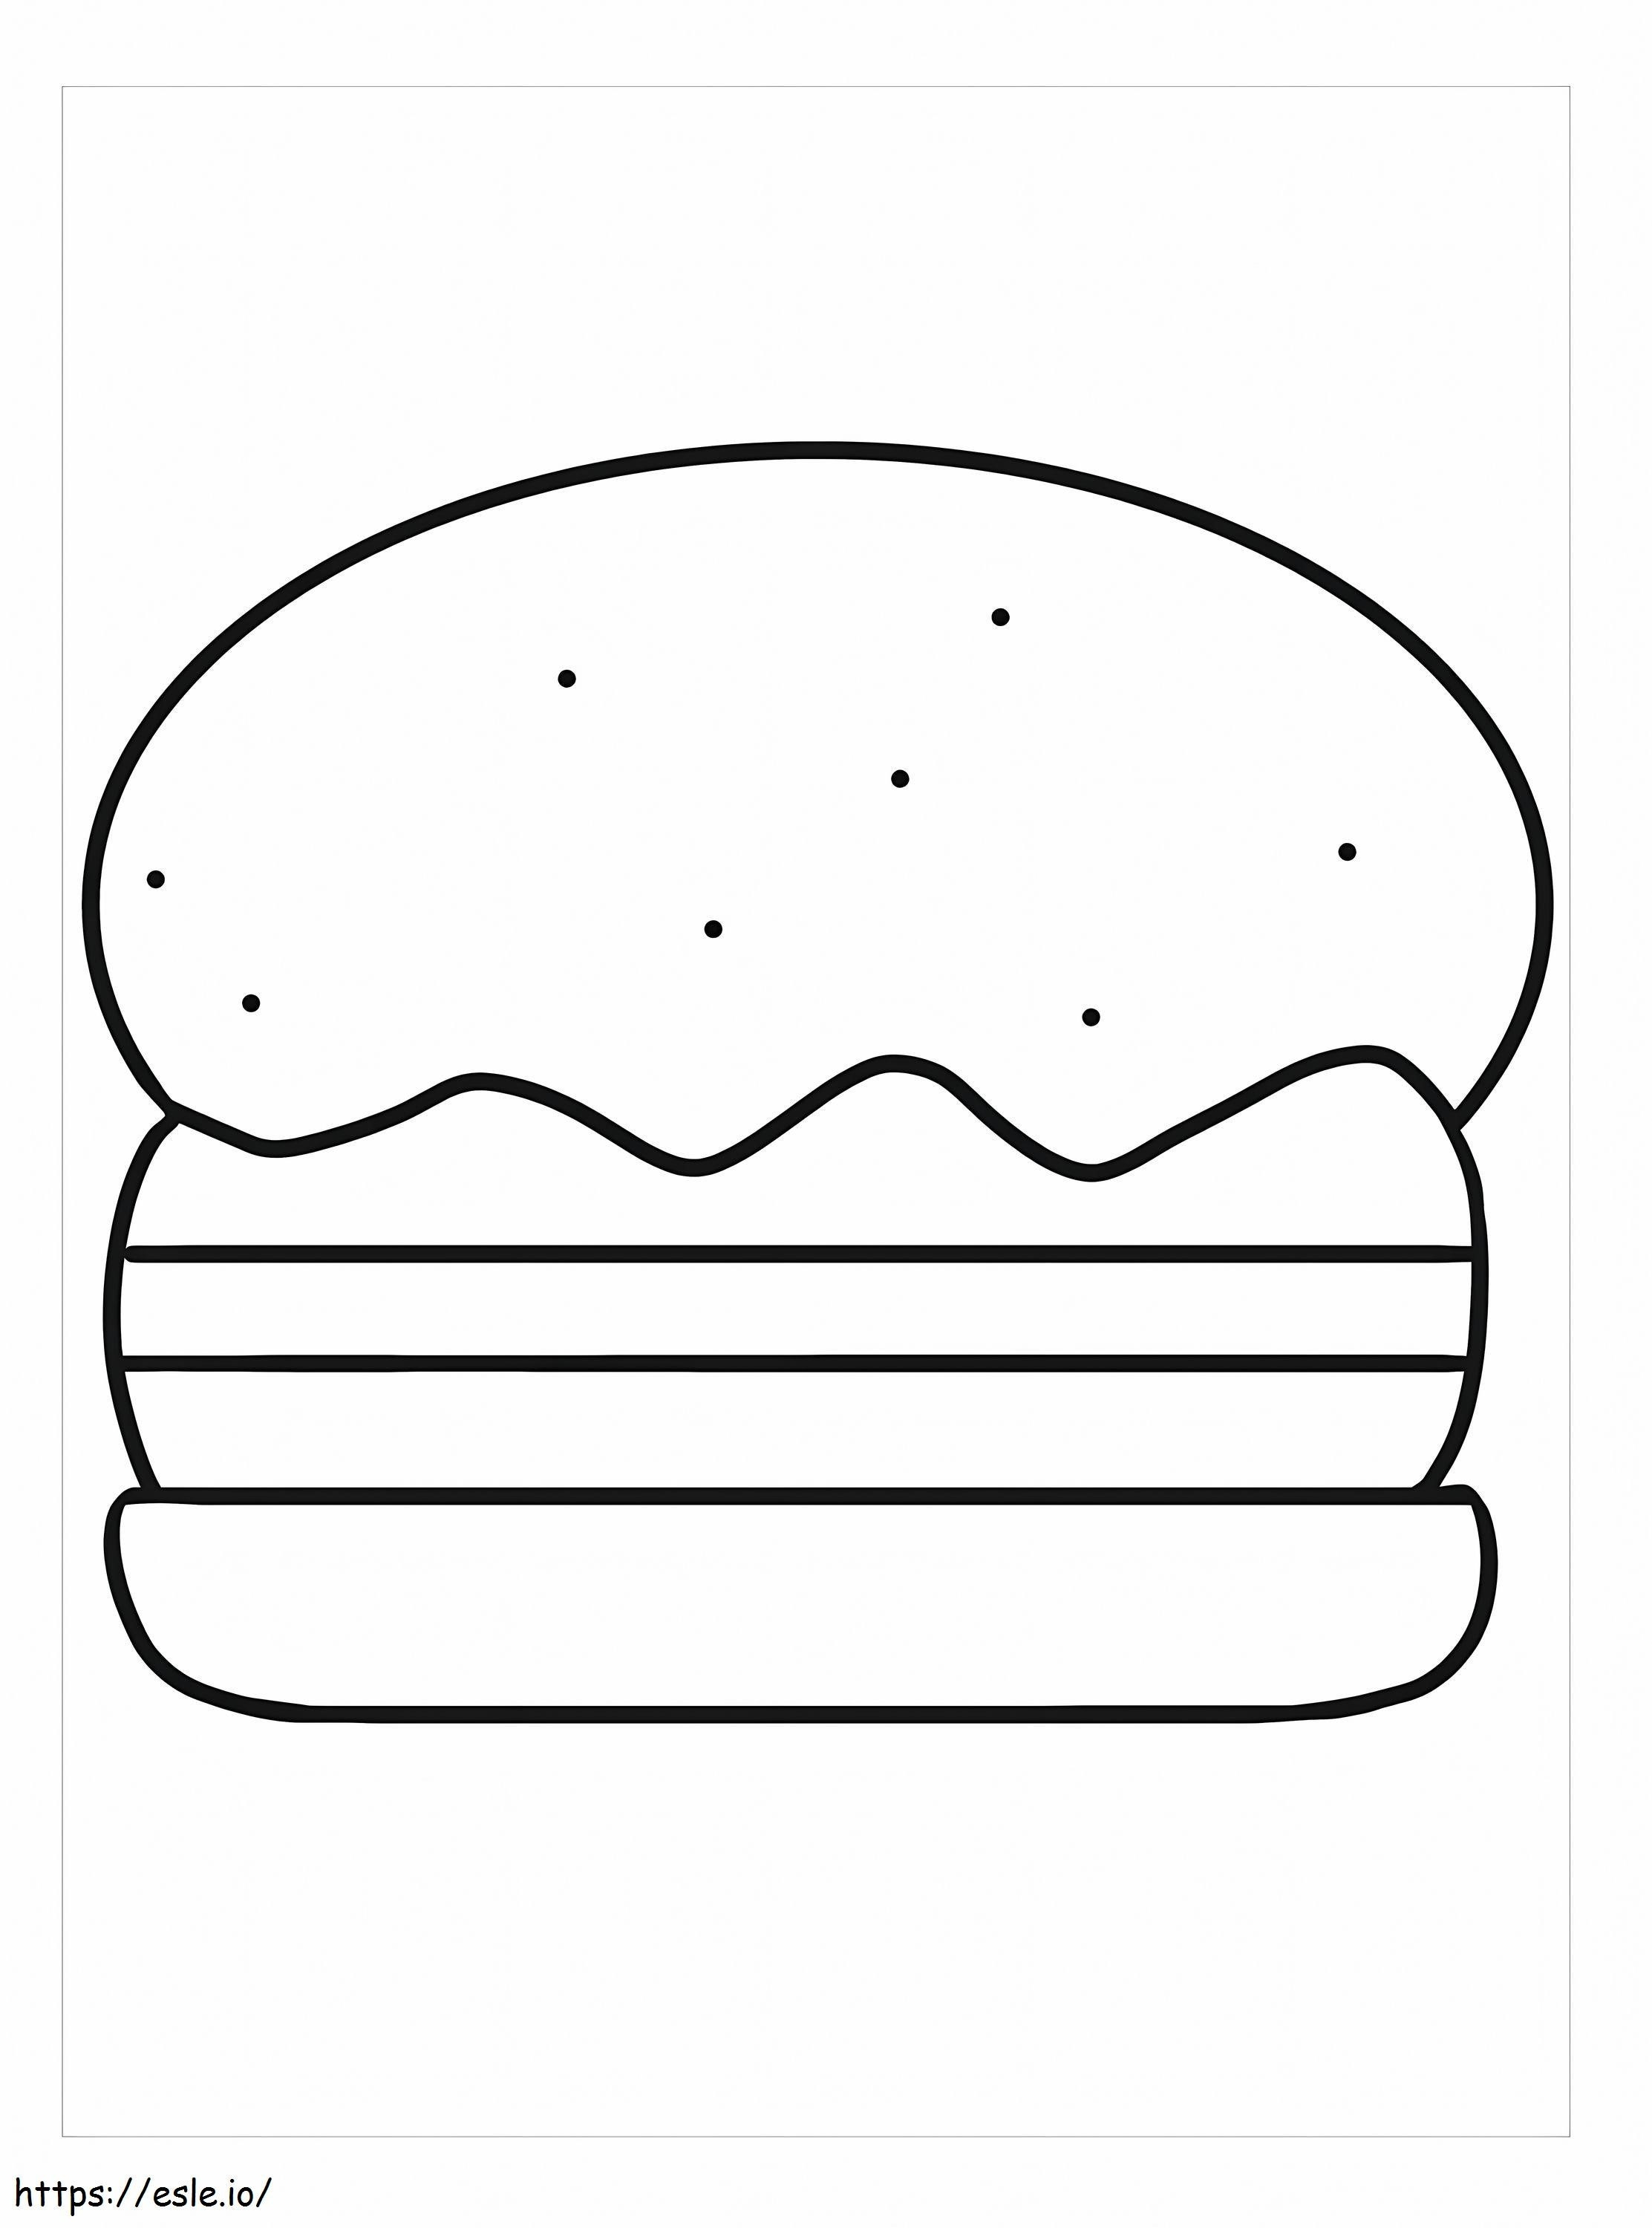 Hamburger Untuk Mencetak Gambar Mewarnai